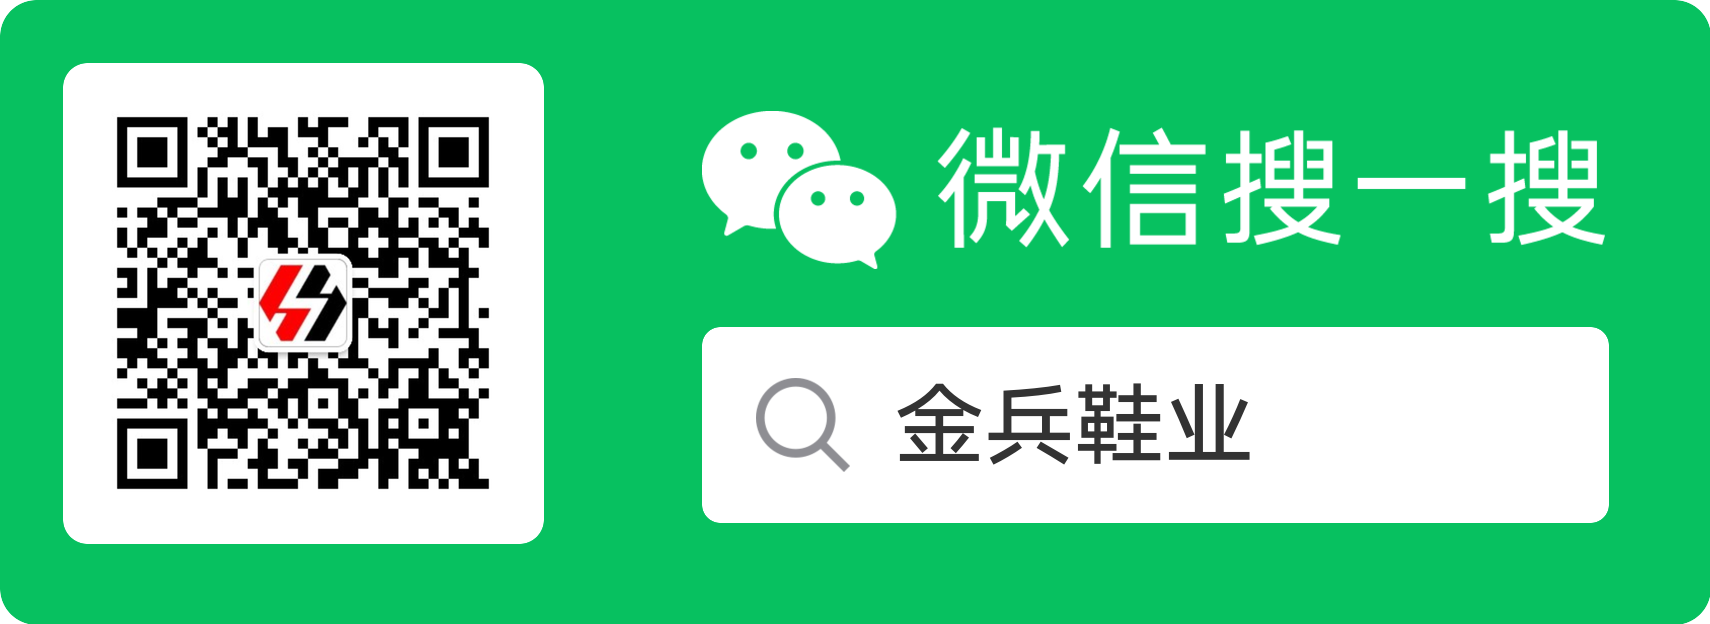 สแกนรหัสหรือ WeChat เพื่อค้นหาหมายเลขสาธารณะ：Kingbing รองเท้า.png